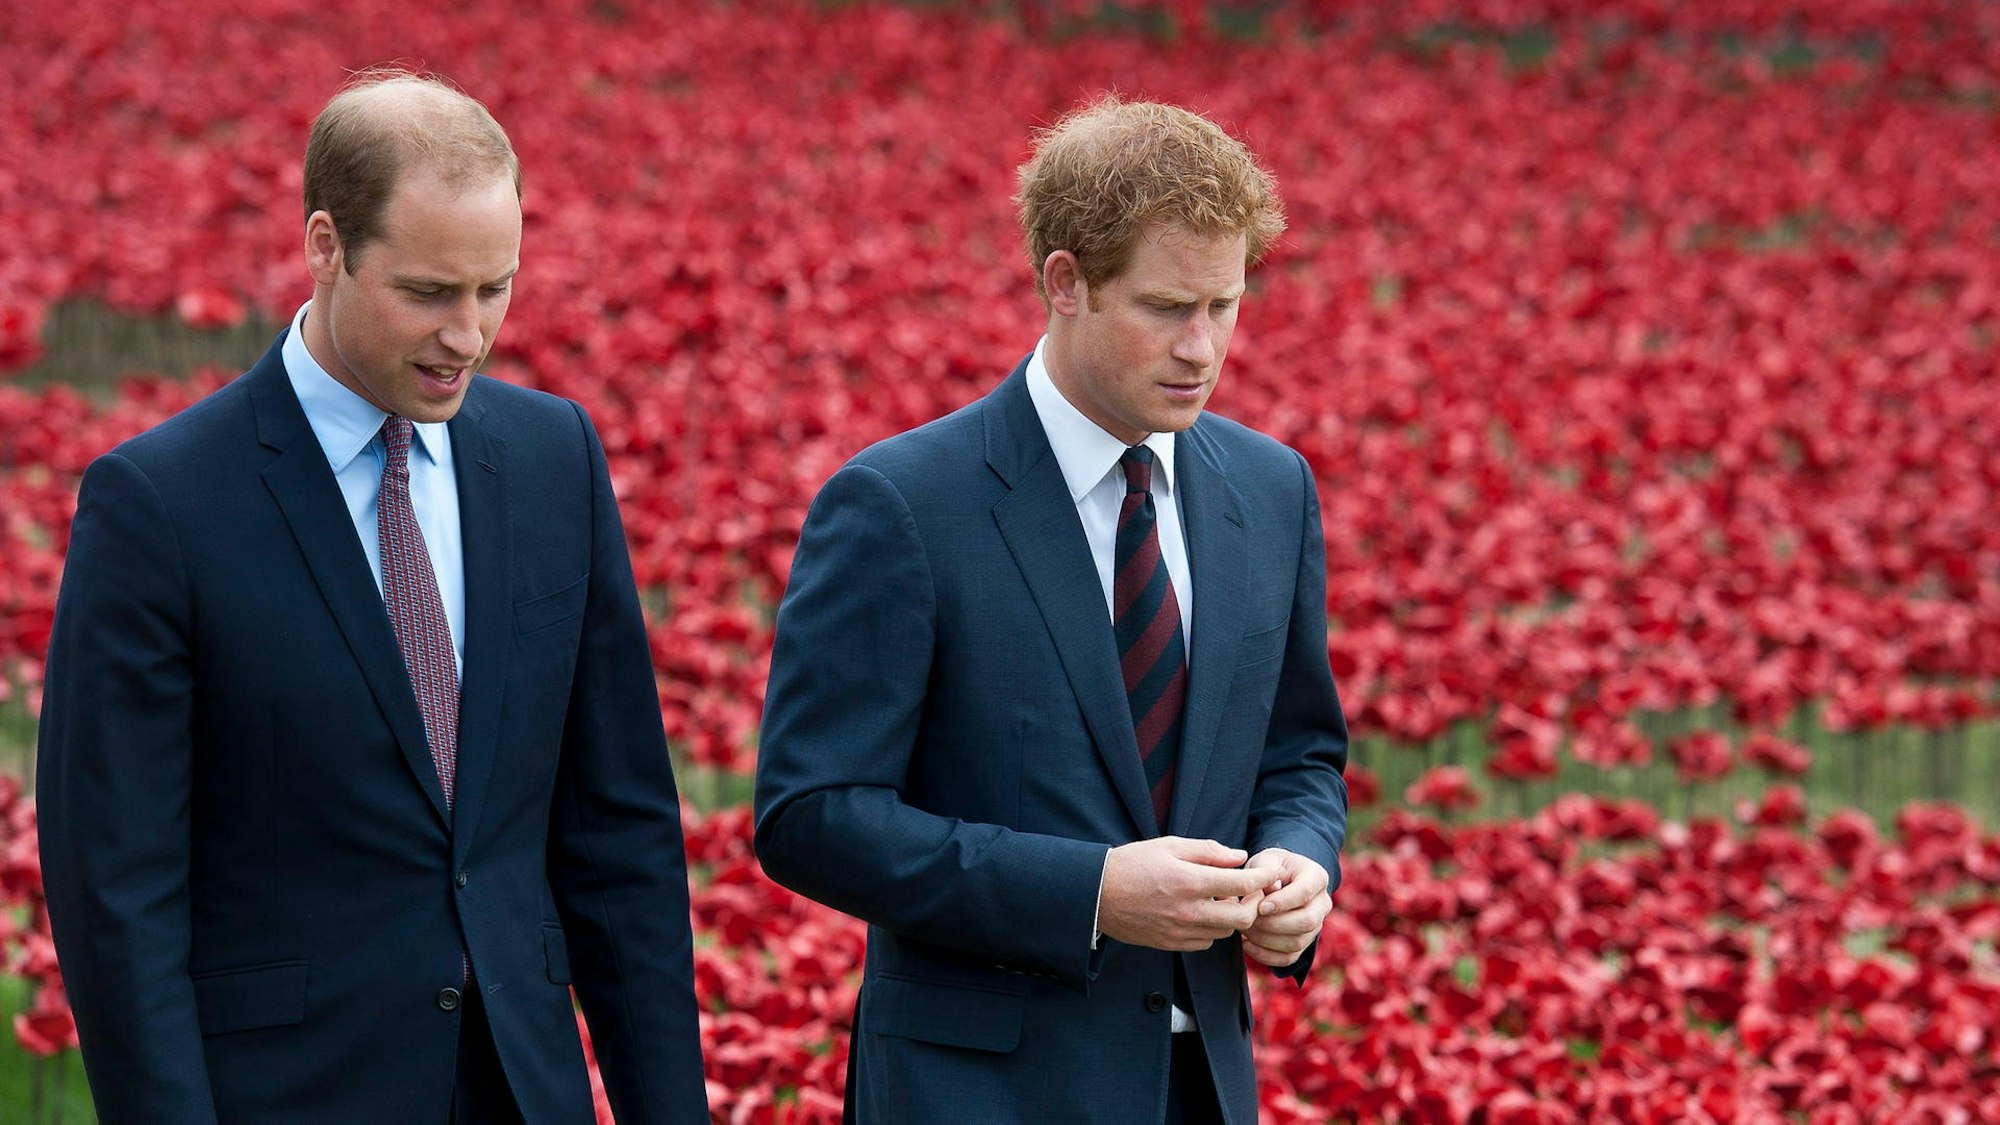 Prinz William und Prinz Harry stehen vor einem Feld mit rotem Mohn.